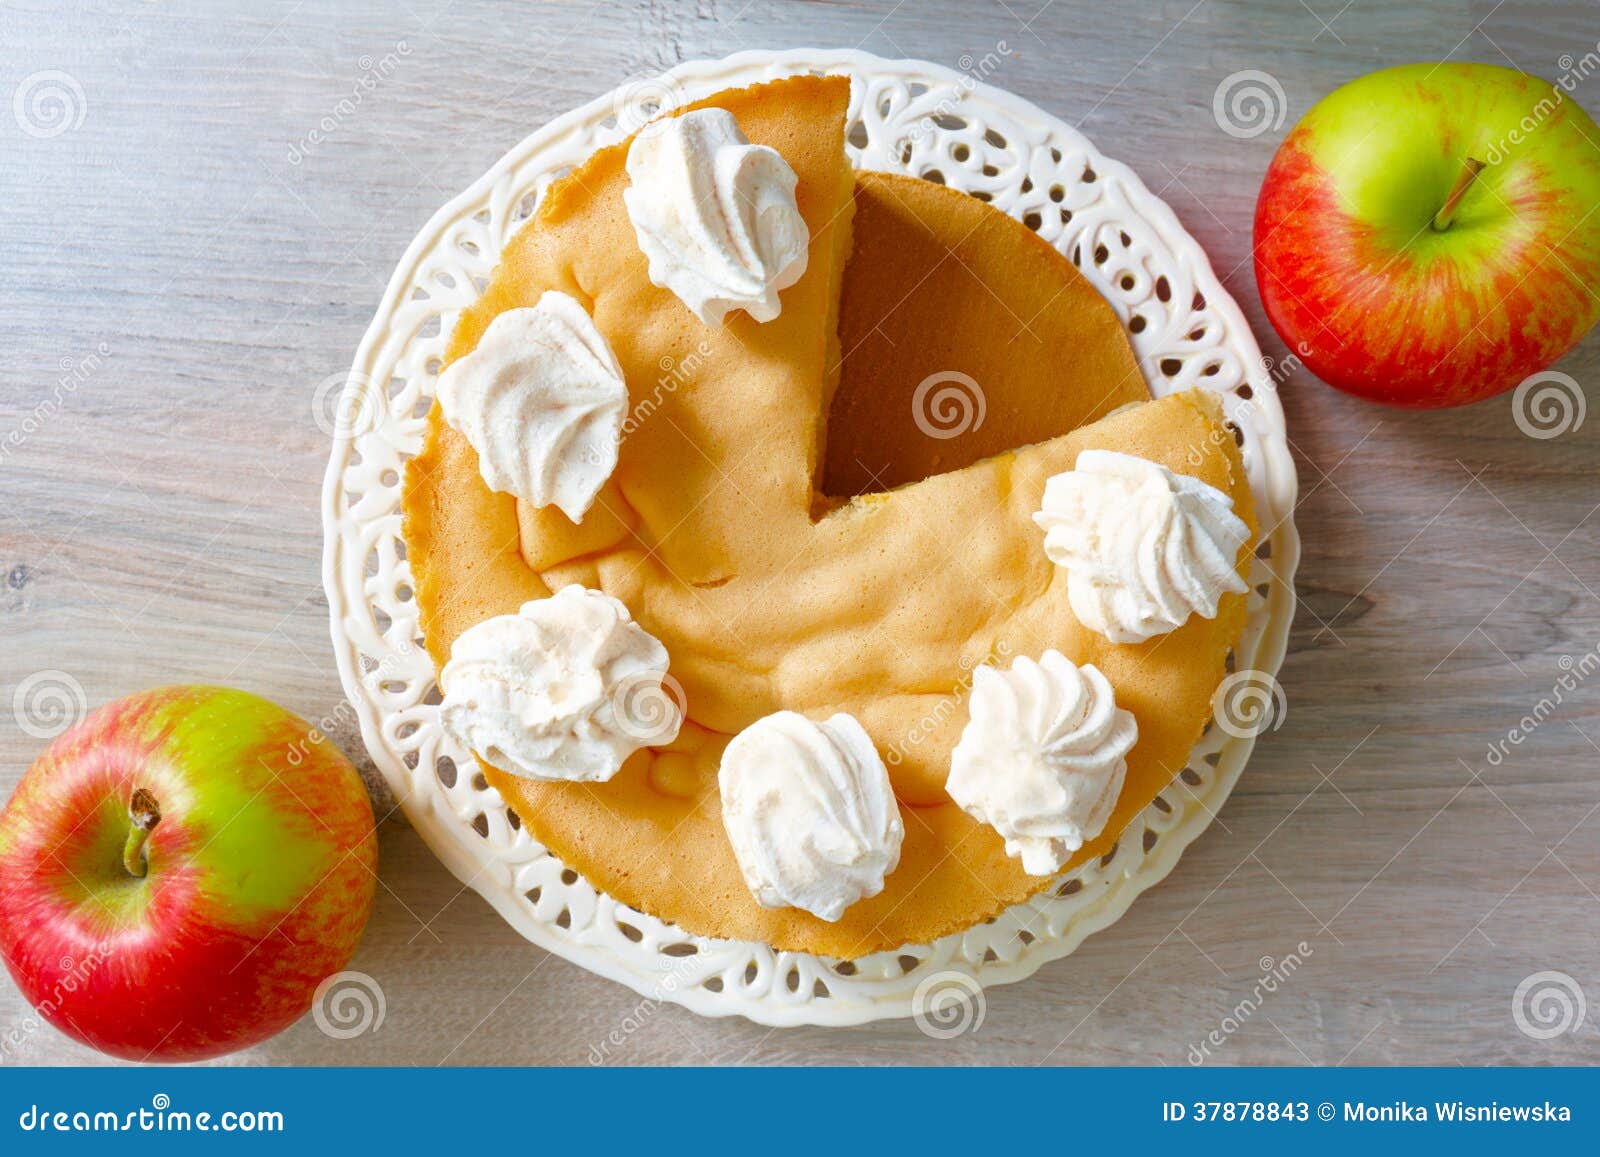 蘋果磅蛋糕 by Hannah Wu - 愛料理